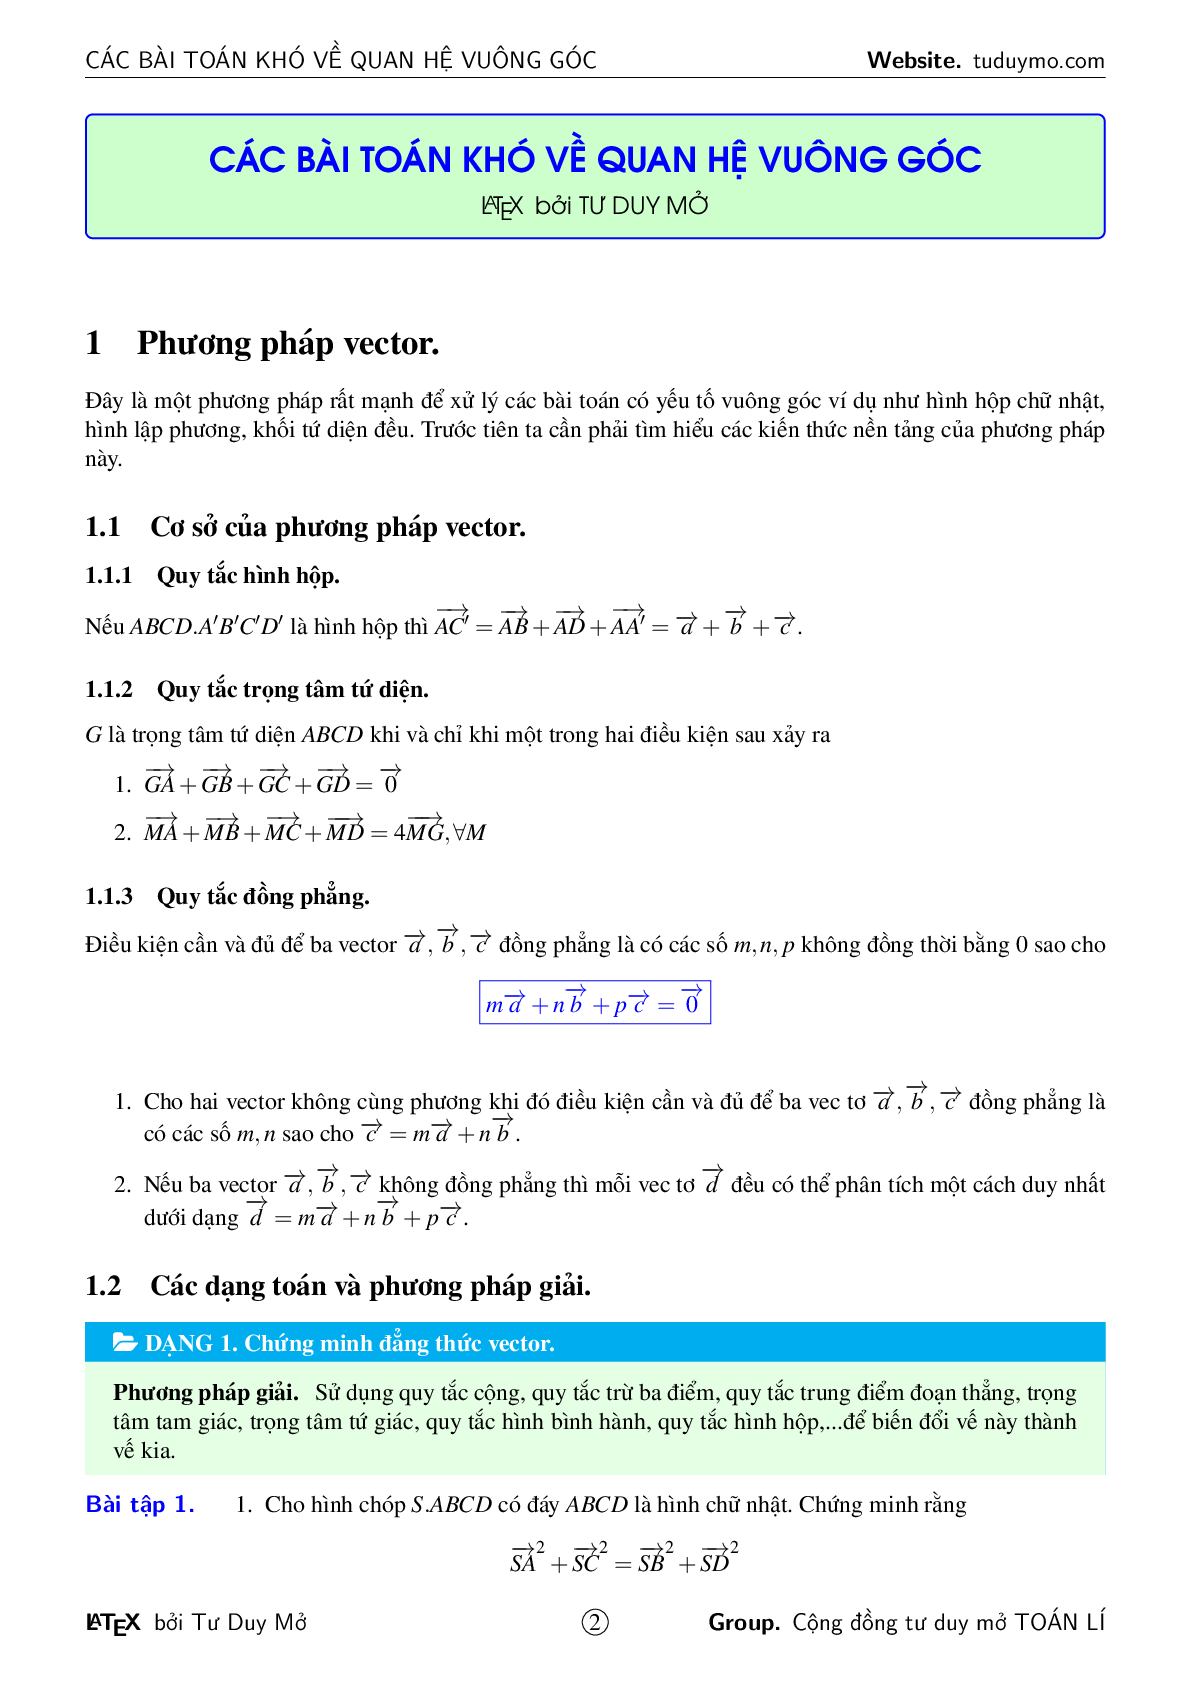 Các bài toán khó về quan hệ vuông góc (trang 2)